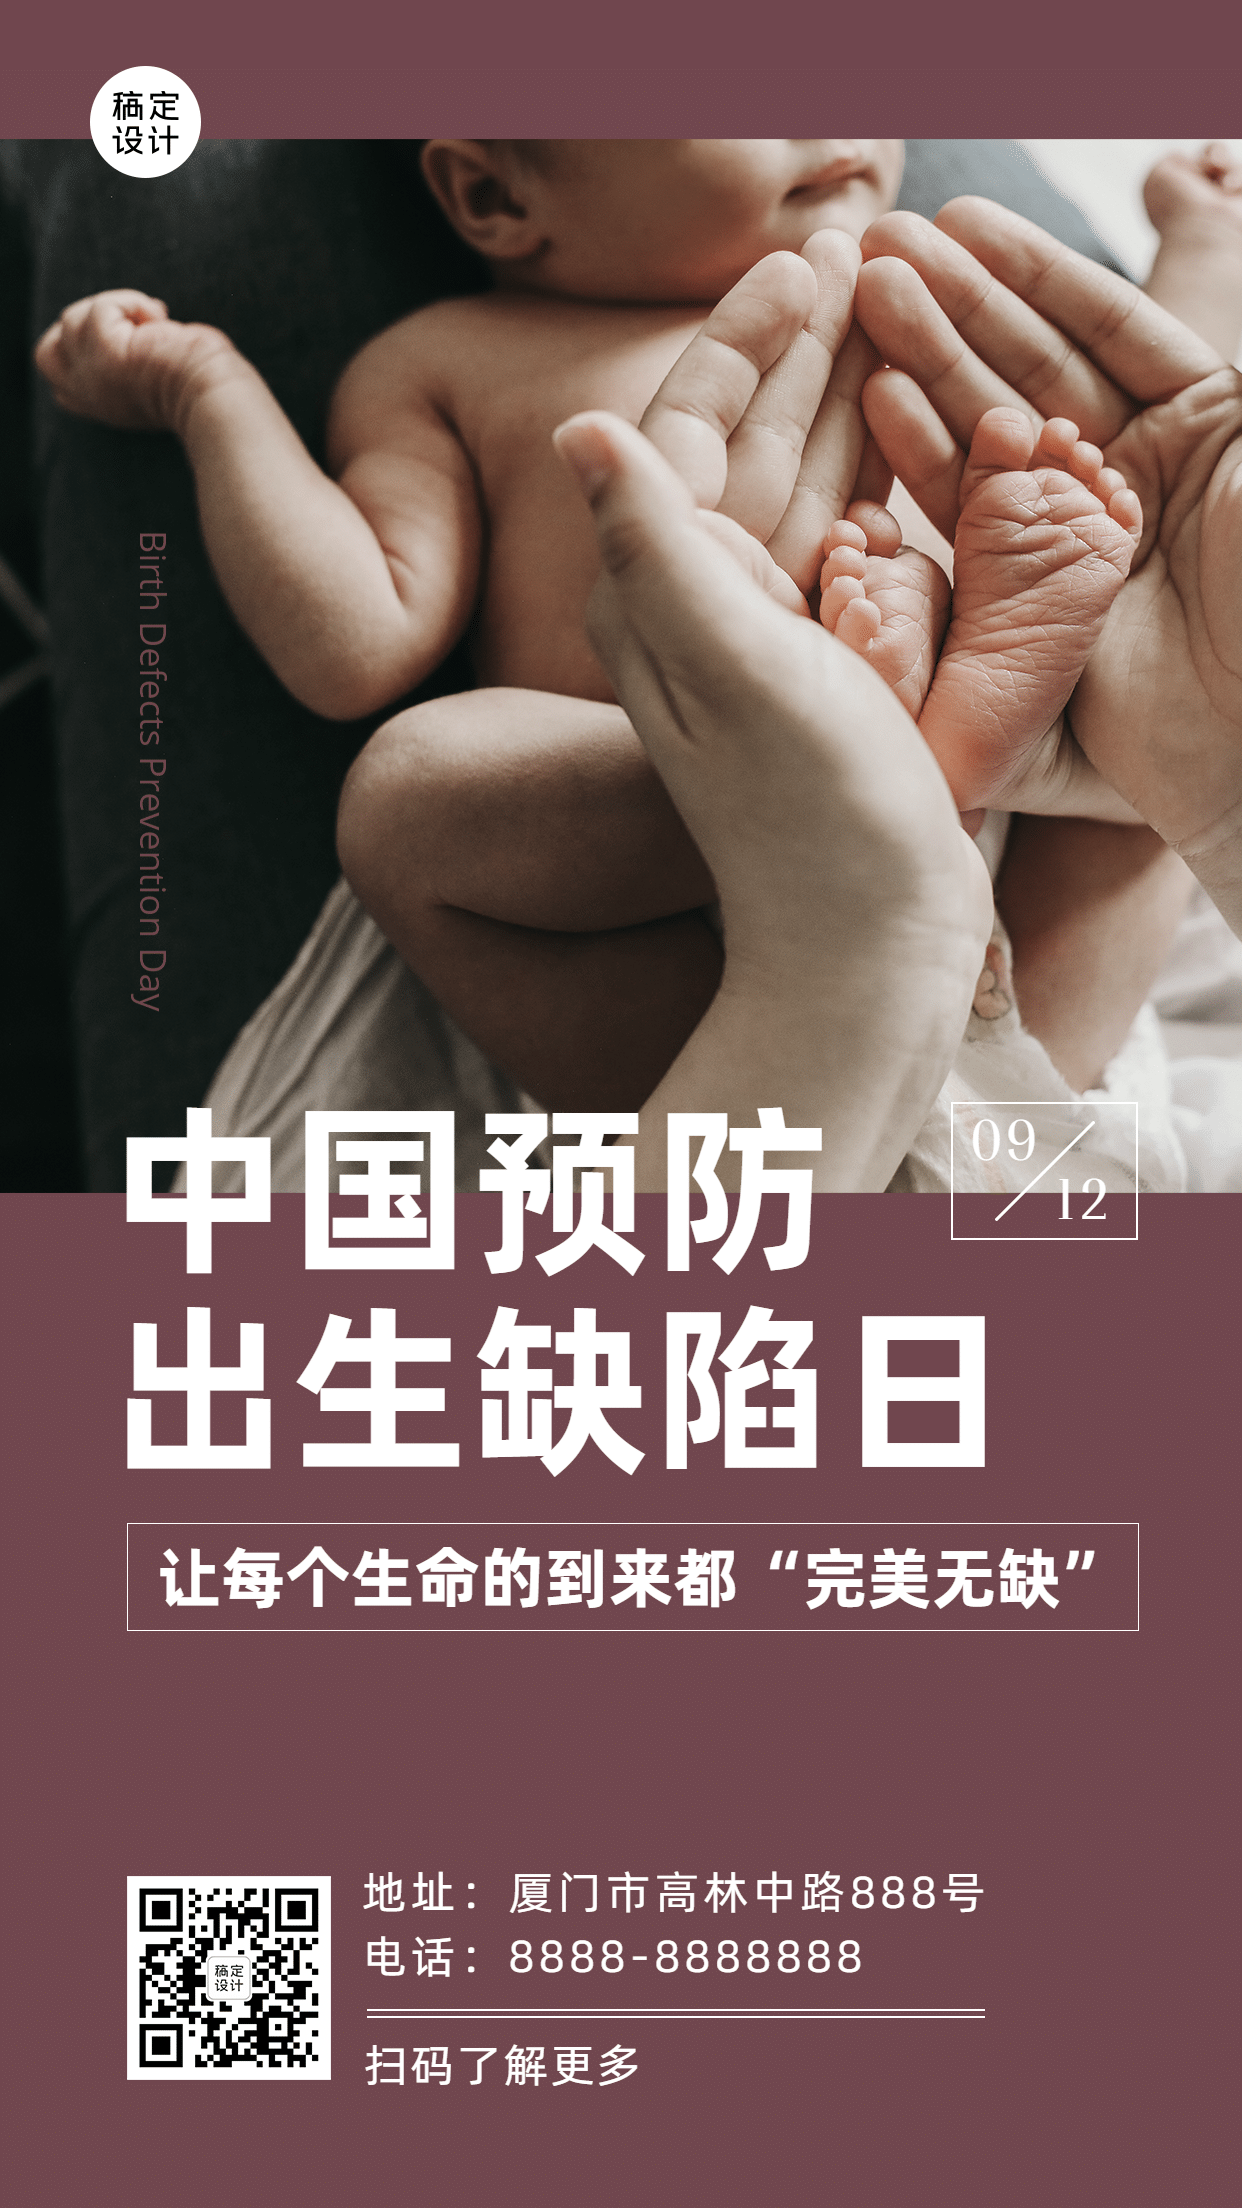 中国预防出生缺陷日公益宣传实景海报预览效果